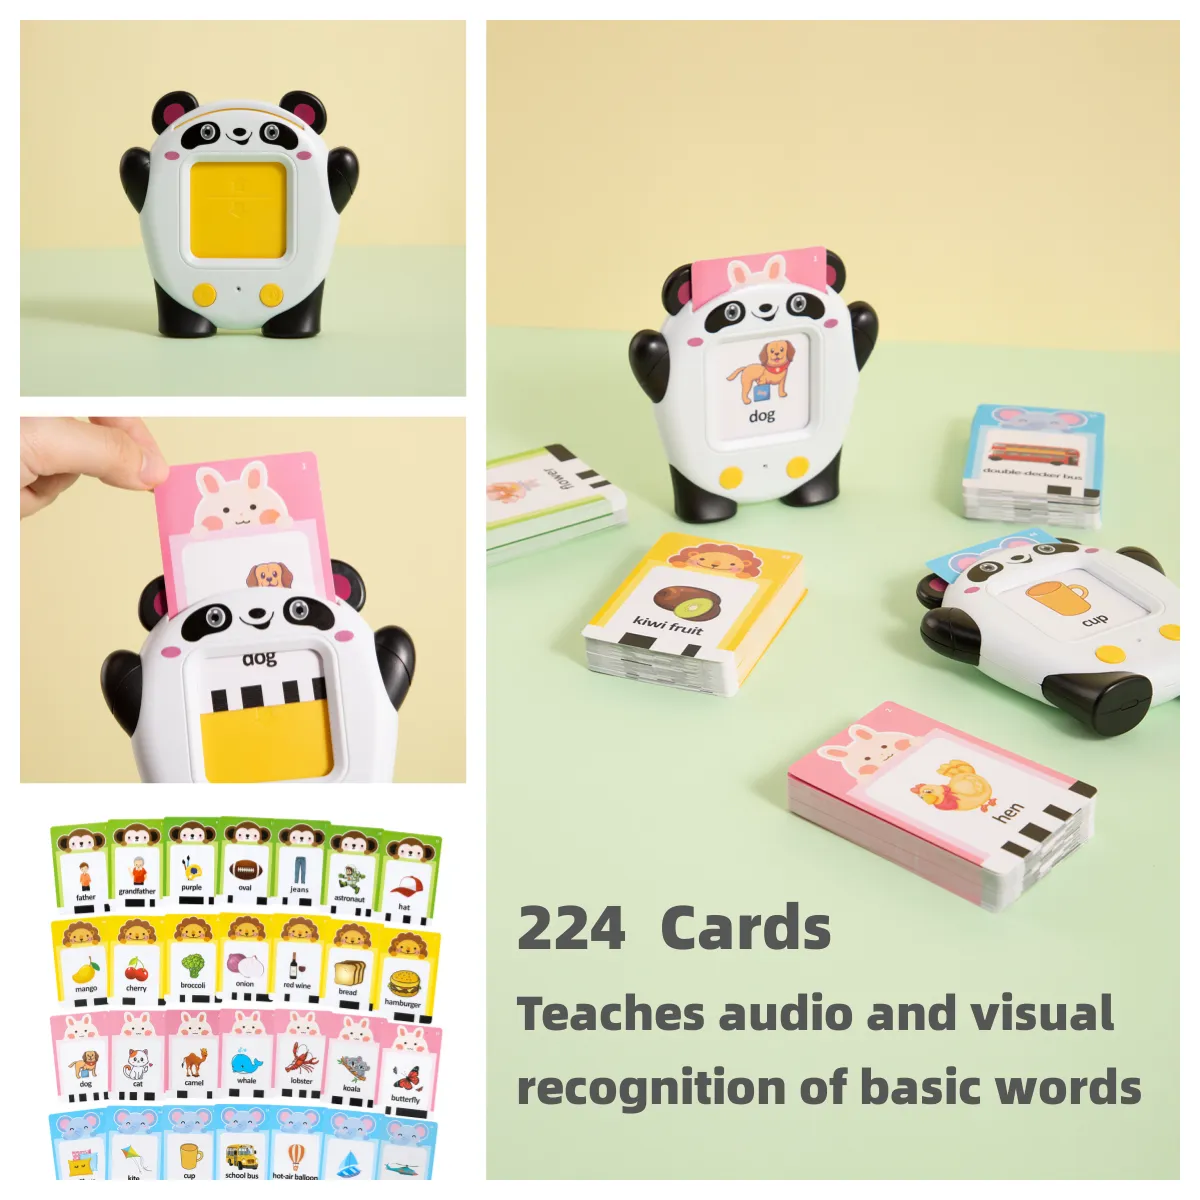 會說話的閃卡學習玩具兒童早期智能教育聲卡閱讀學習英語機具 224 個單詞適合 2-6 歲